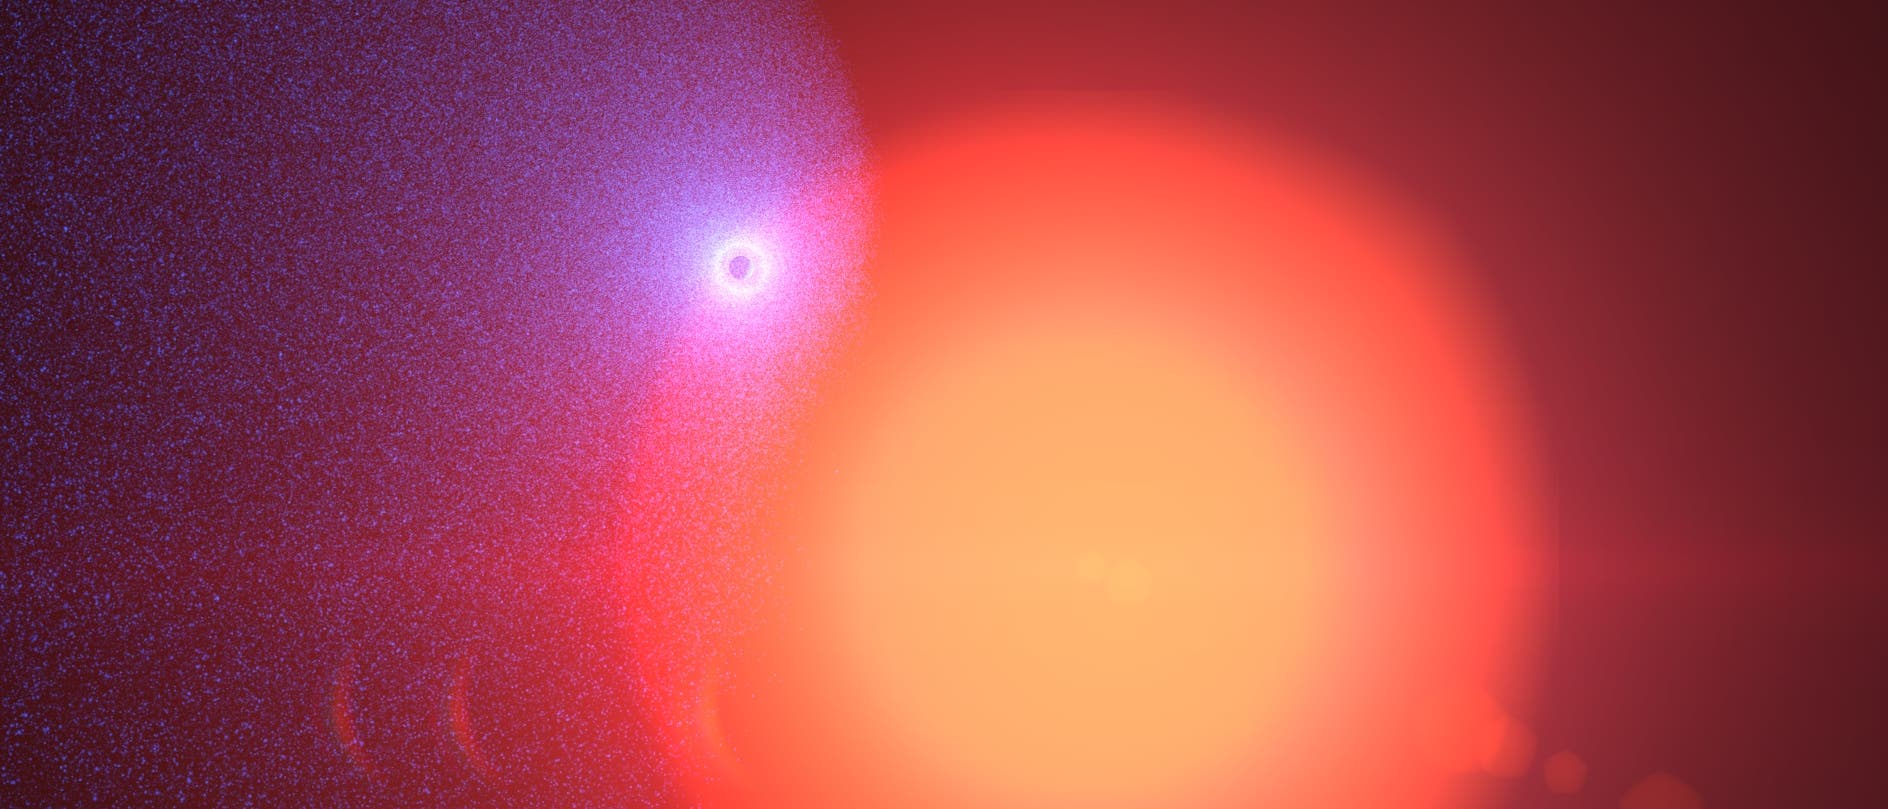 Der Exoplanet GJ 436b (künstlerische Darstellung)